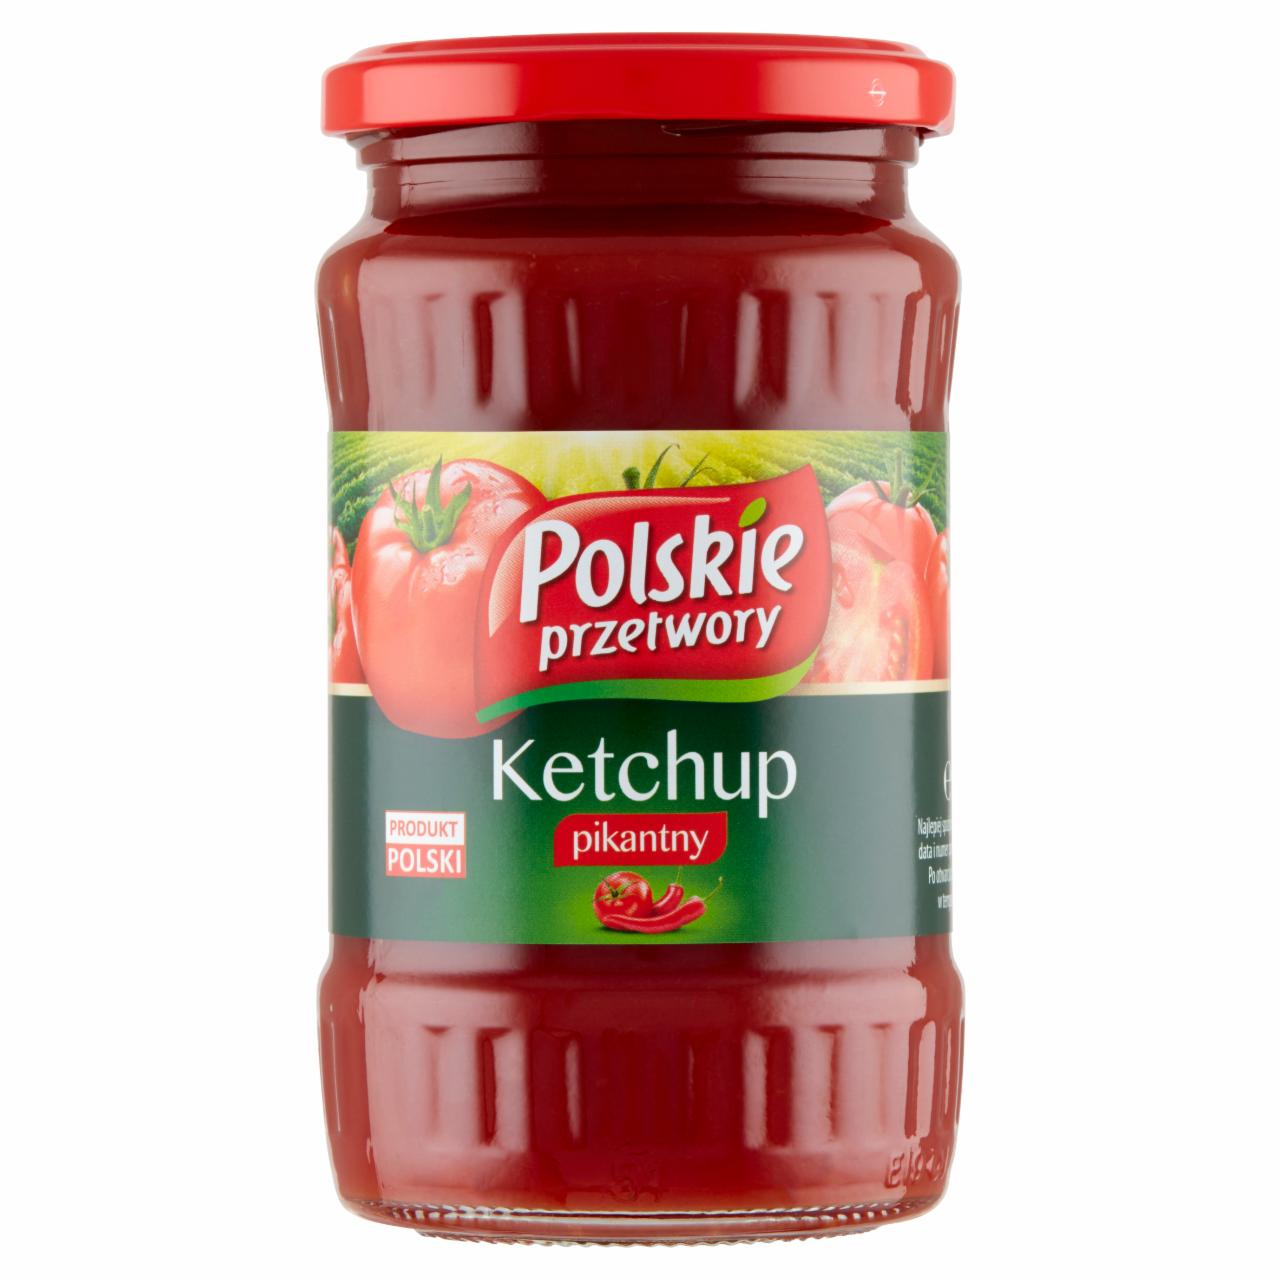 Zdjęcia - Polskie przetwory Ketchup pikantny 380 g